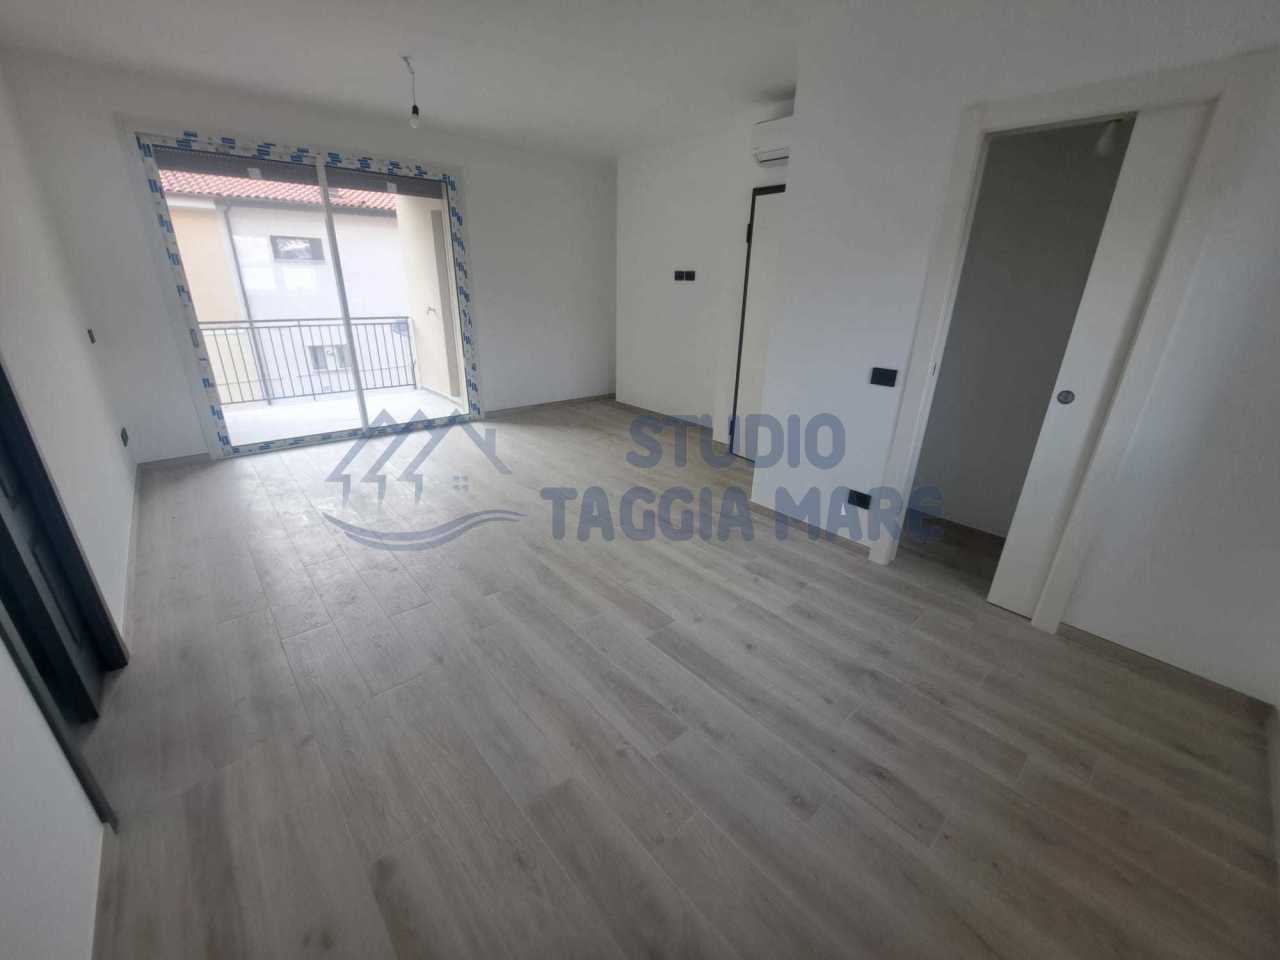 Appartamento in vendita a Taggia, 3 locali, prezzo € 290.000 | PortaleAgenzieImmobiliari.it